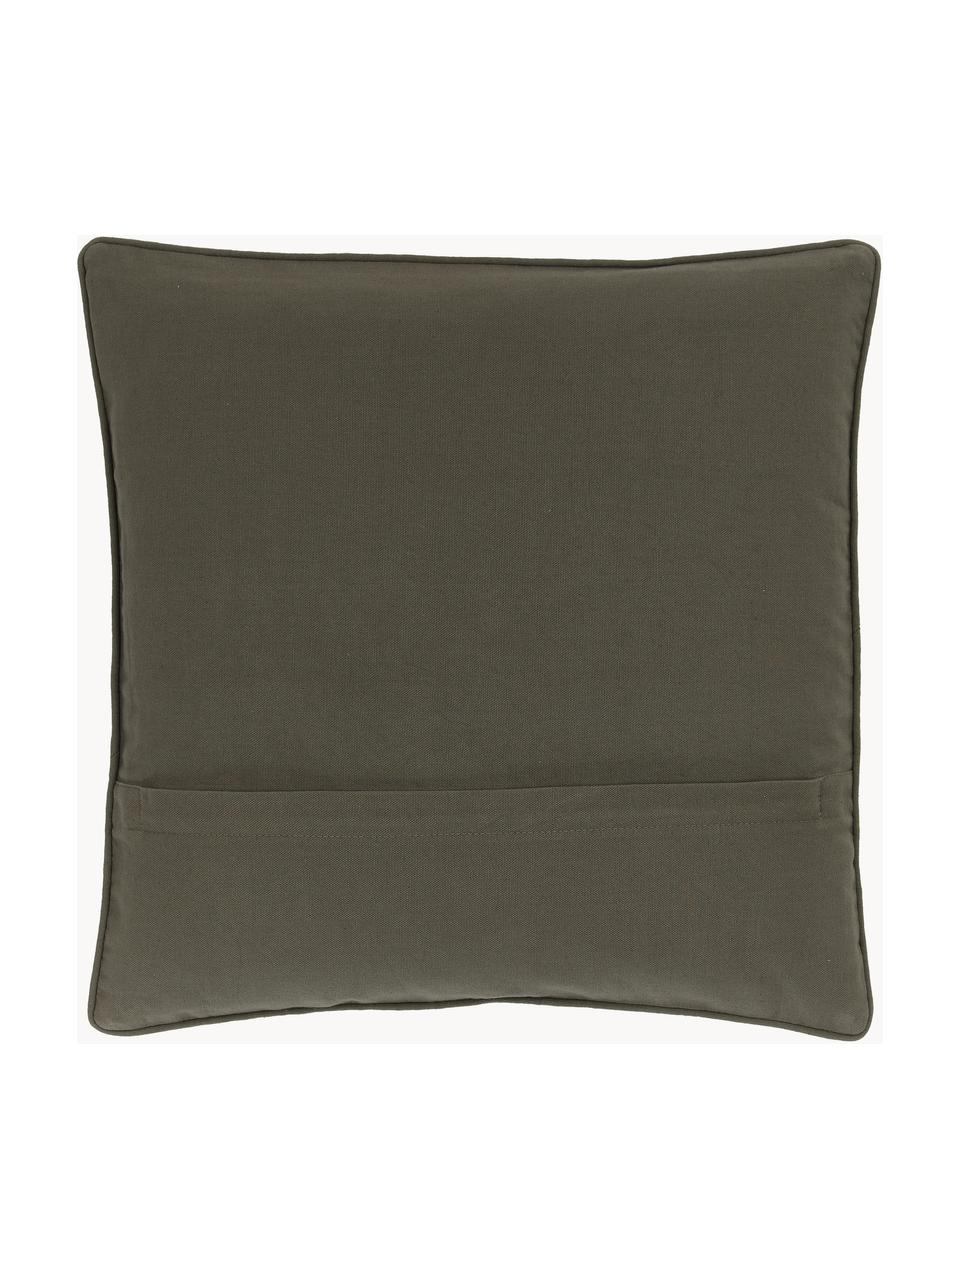 Poszewka na poduszkę z bawełny Blaki, 100% bawełna, Zielony, kremowobiały, S 45 x D 45 cm